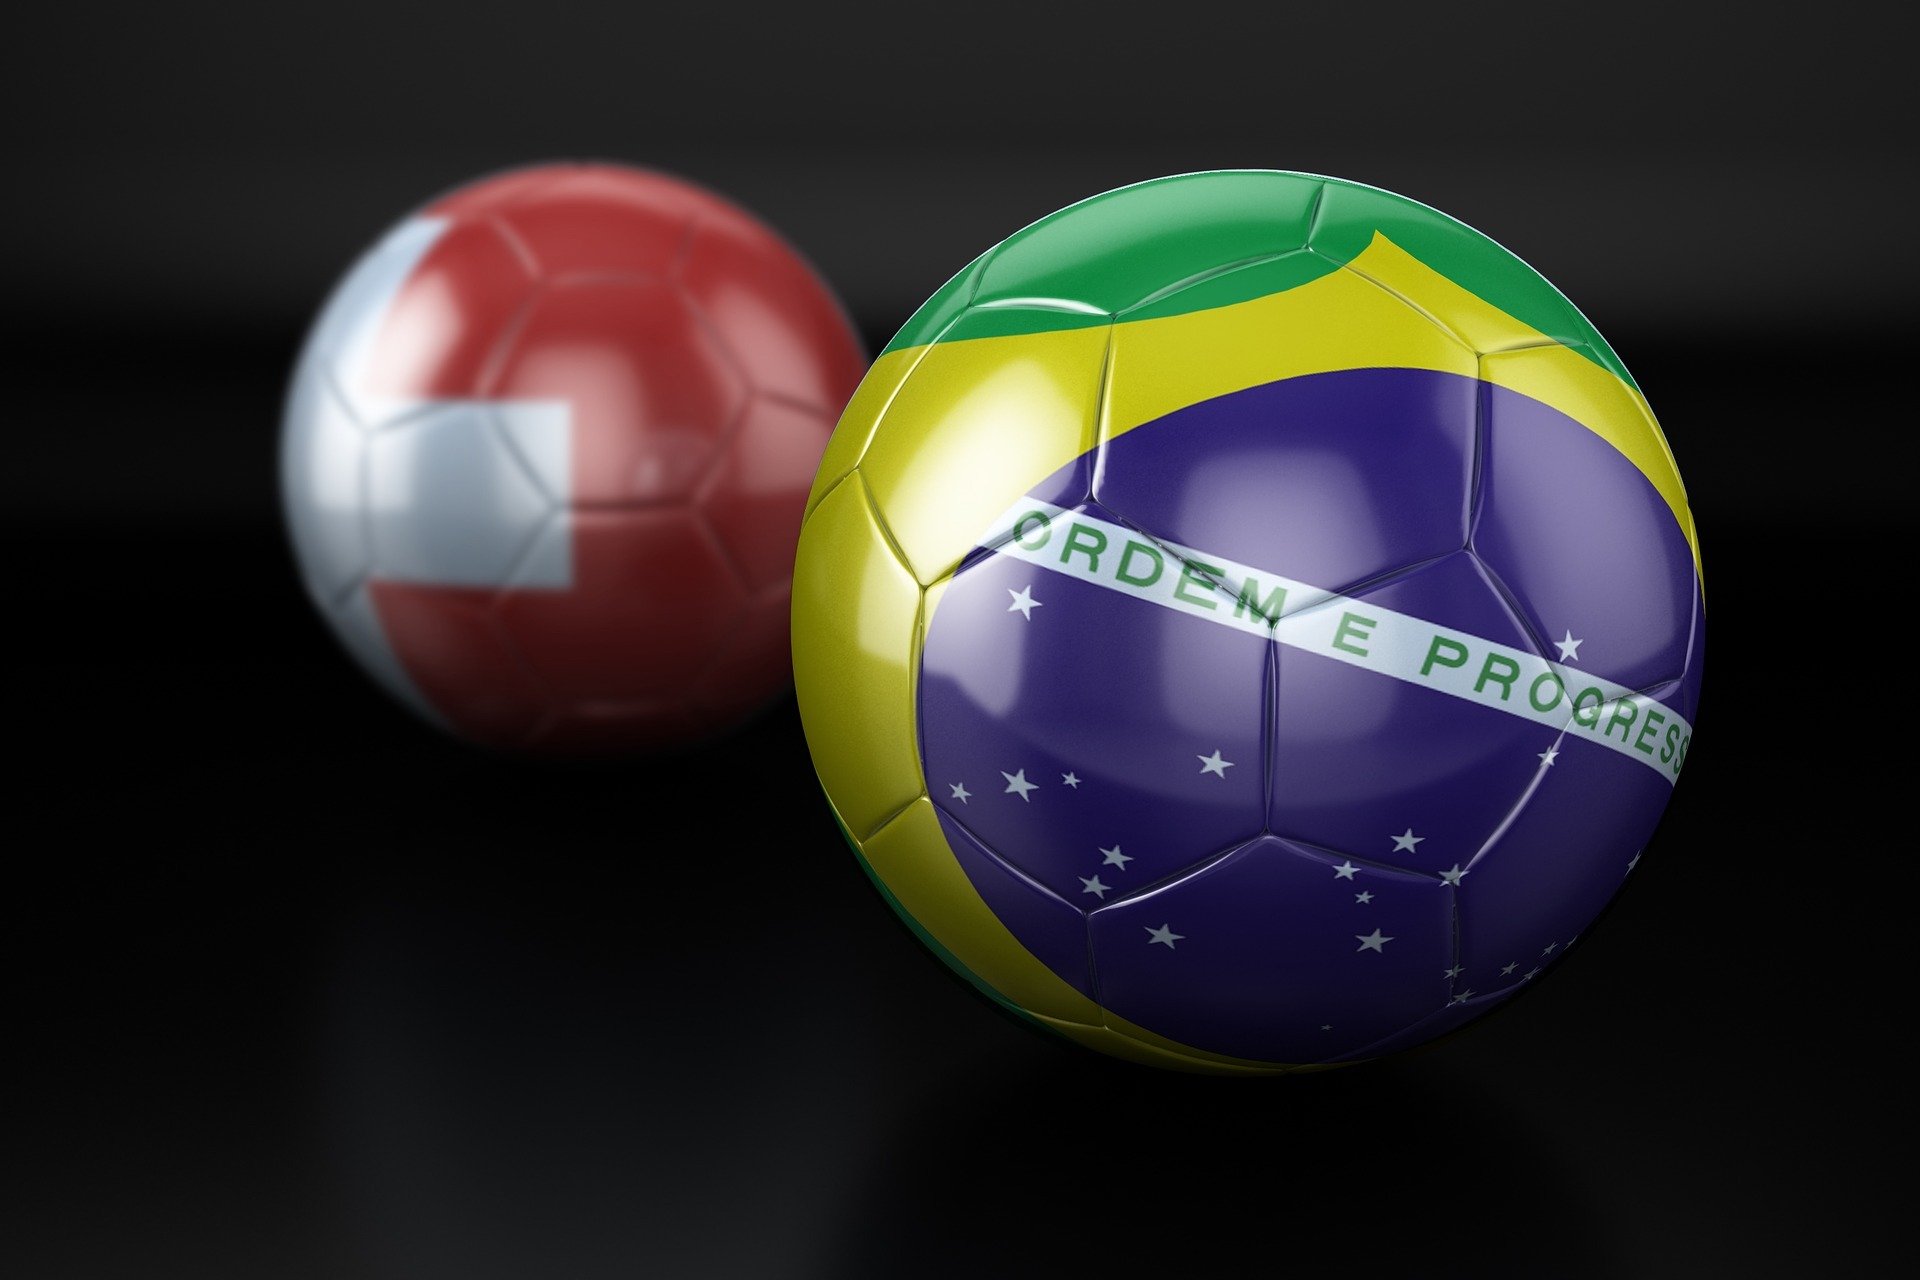 O Brasil vai rumo ao Hexa novamente. Mas, primeiro, precisa passar pelo grupo G. Veja quais são as expectativas nessa chave da Copa do Mundo.